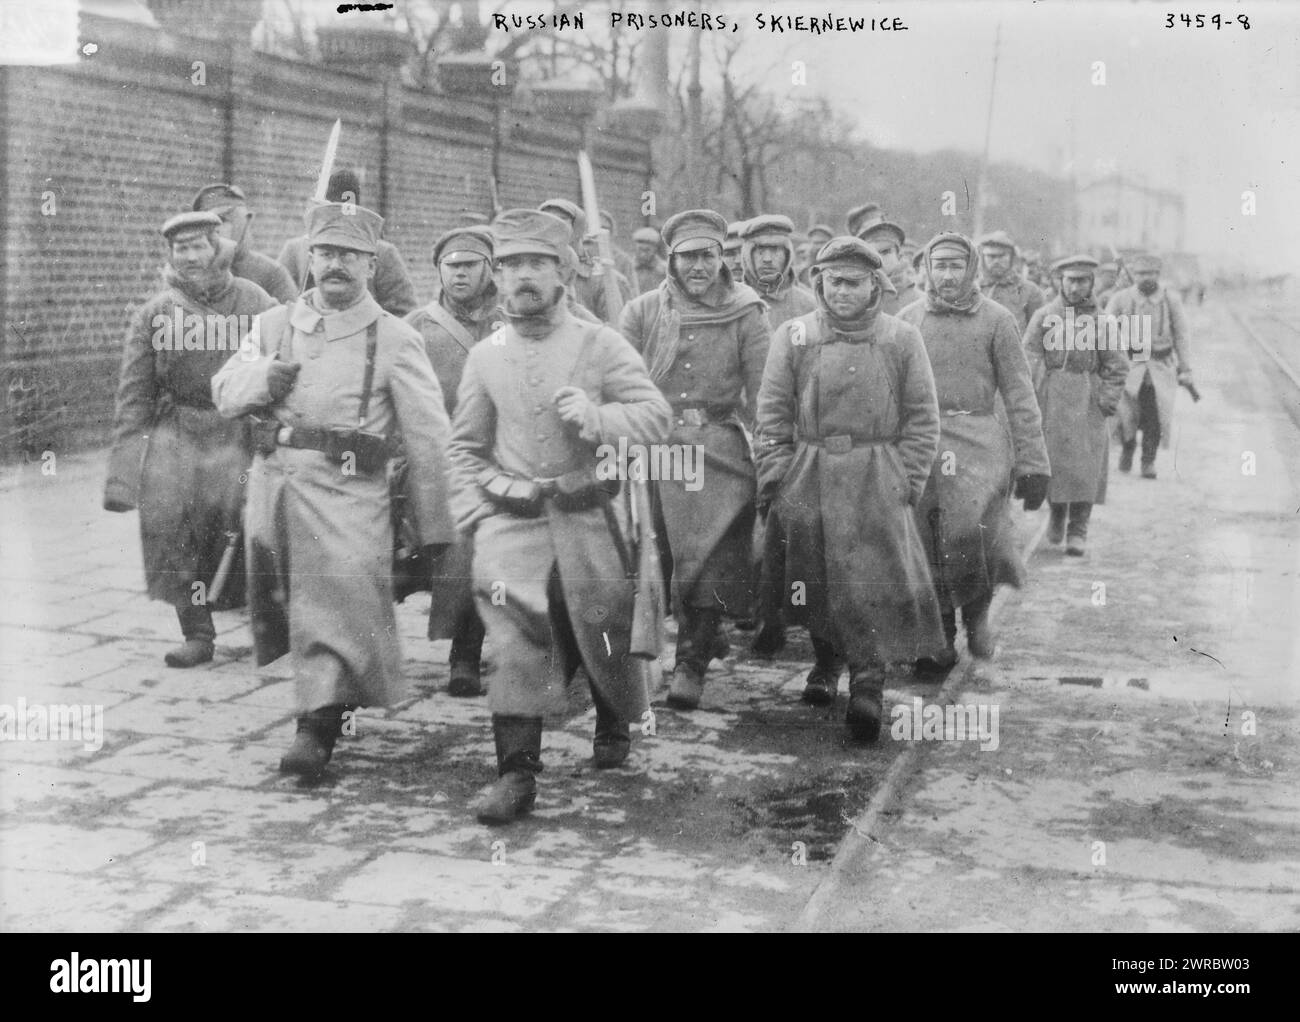 Russische Gefangene, Skiernewice, Foto zeigt russische Gefangene in Skierniewice, Polen während des Ersten Weltkriegs, zwischen ca. 1914 und ca. 1915, Weltkrieg, 1914-1918, Glasnegative, 1 negativ: Glas Stockfoto